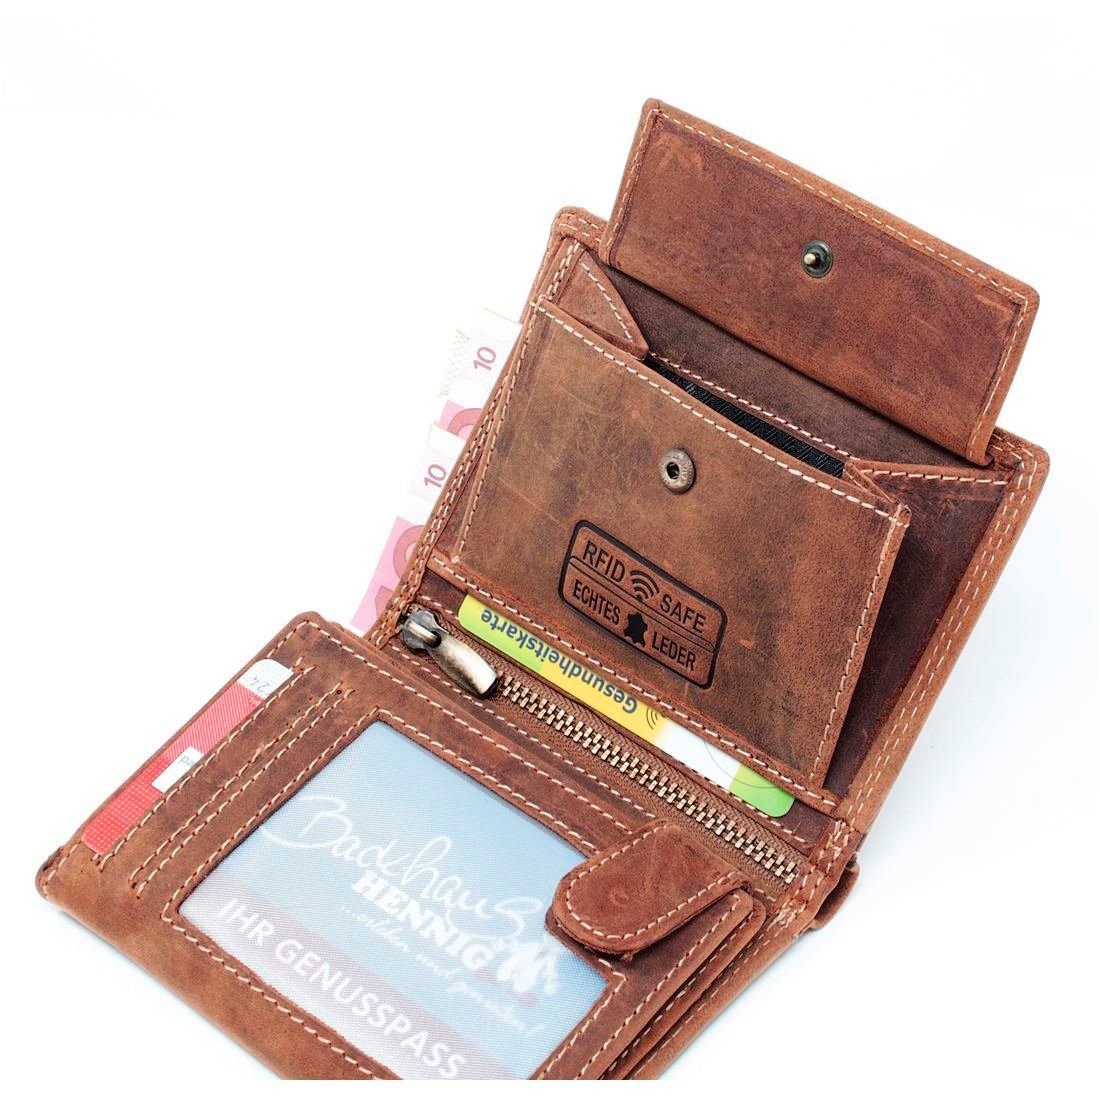 Portemonnaie Lederbörse Geldbörse Geldbeutel Leder Herren Münzfach Männerbörse mit Brieftasche Geldbörse Börse, Schutz RFID SHG